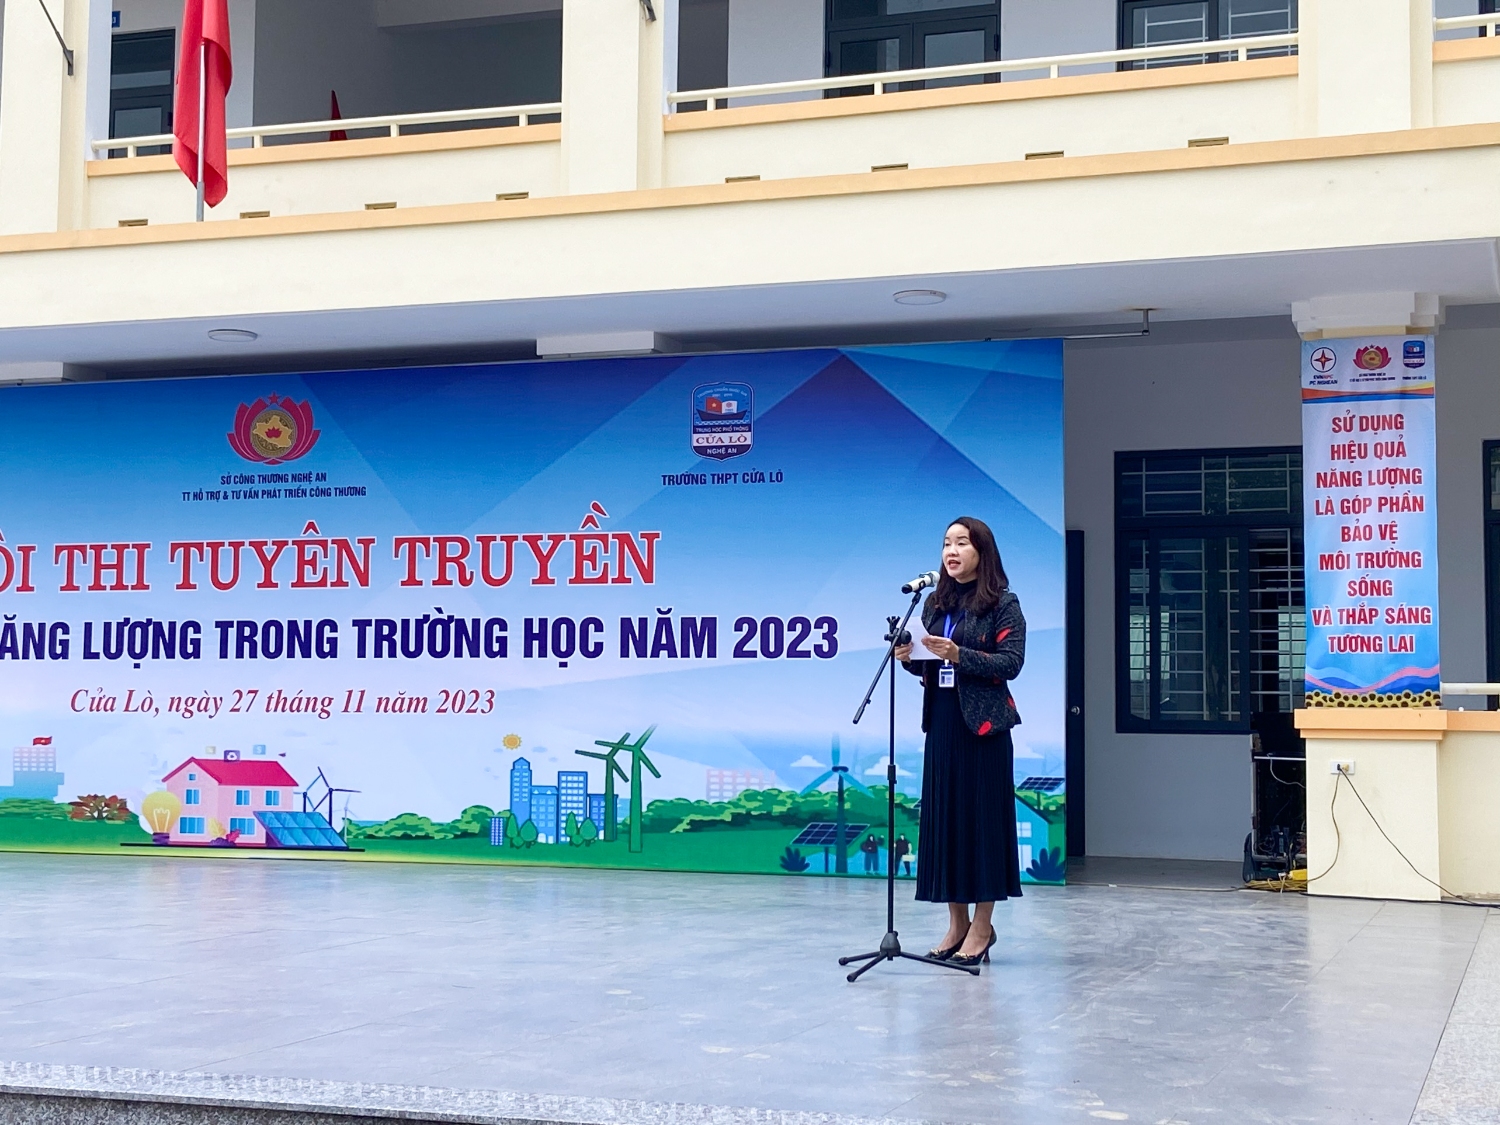 Cô Nguyễn Thị Hải – Phó hiệu trưởng nhà trường Tiếp đến phát biểu khai mạc hội thi 